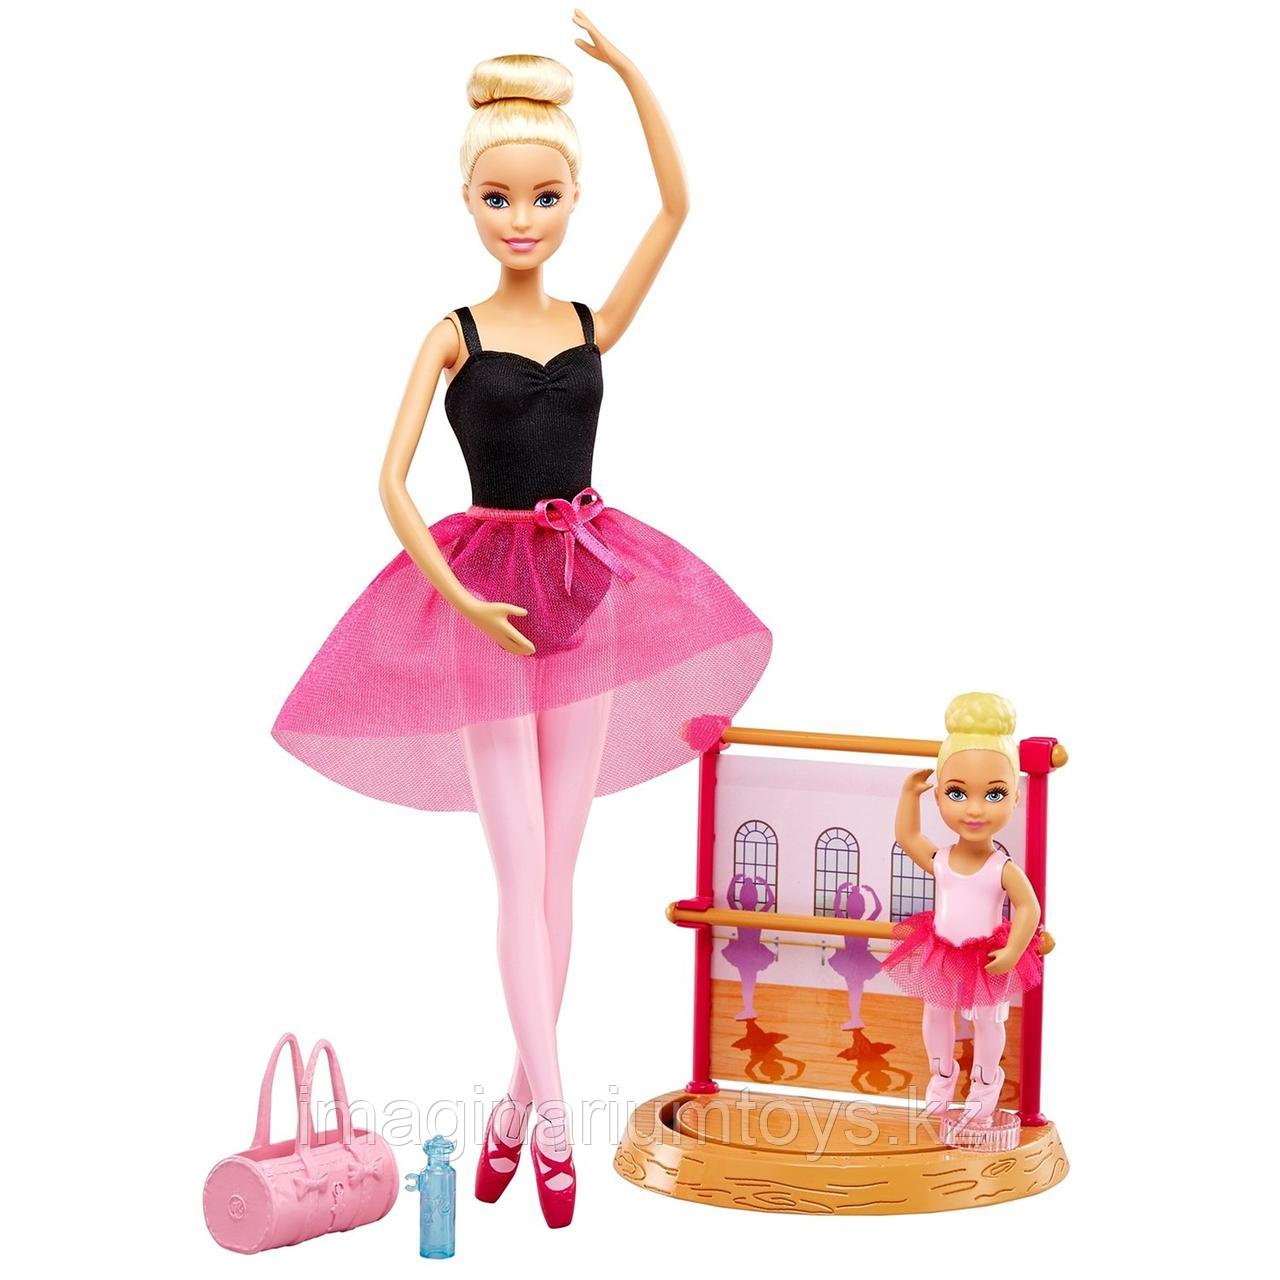 Кукла Barbie Инструктор балета